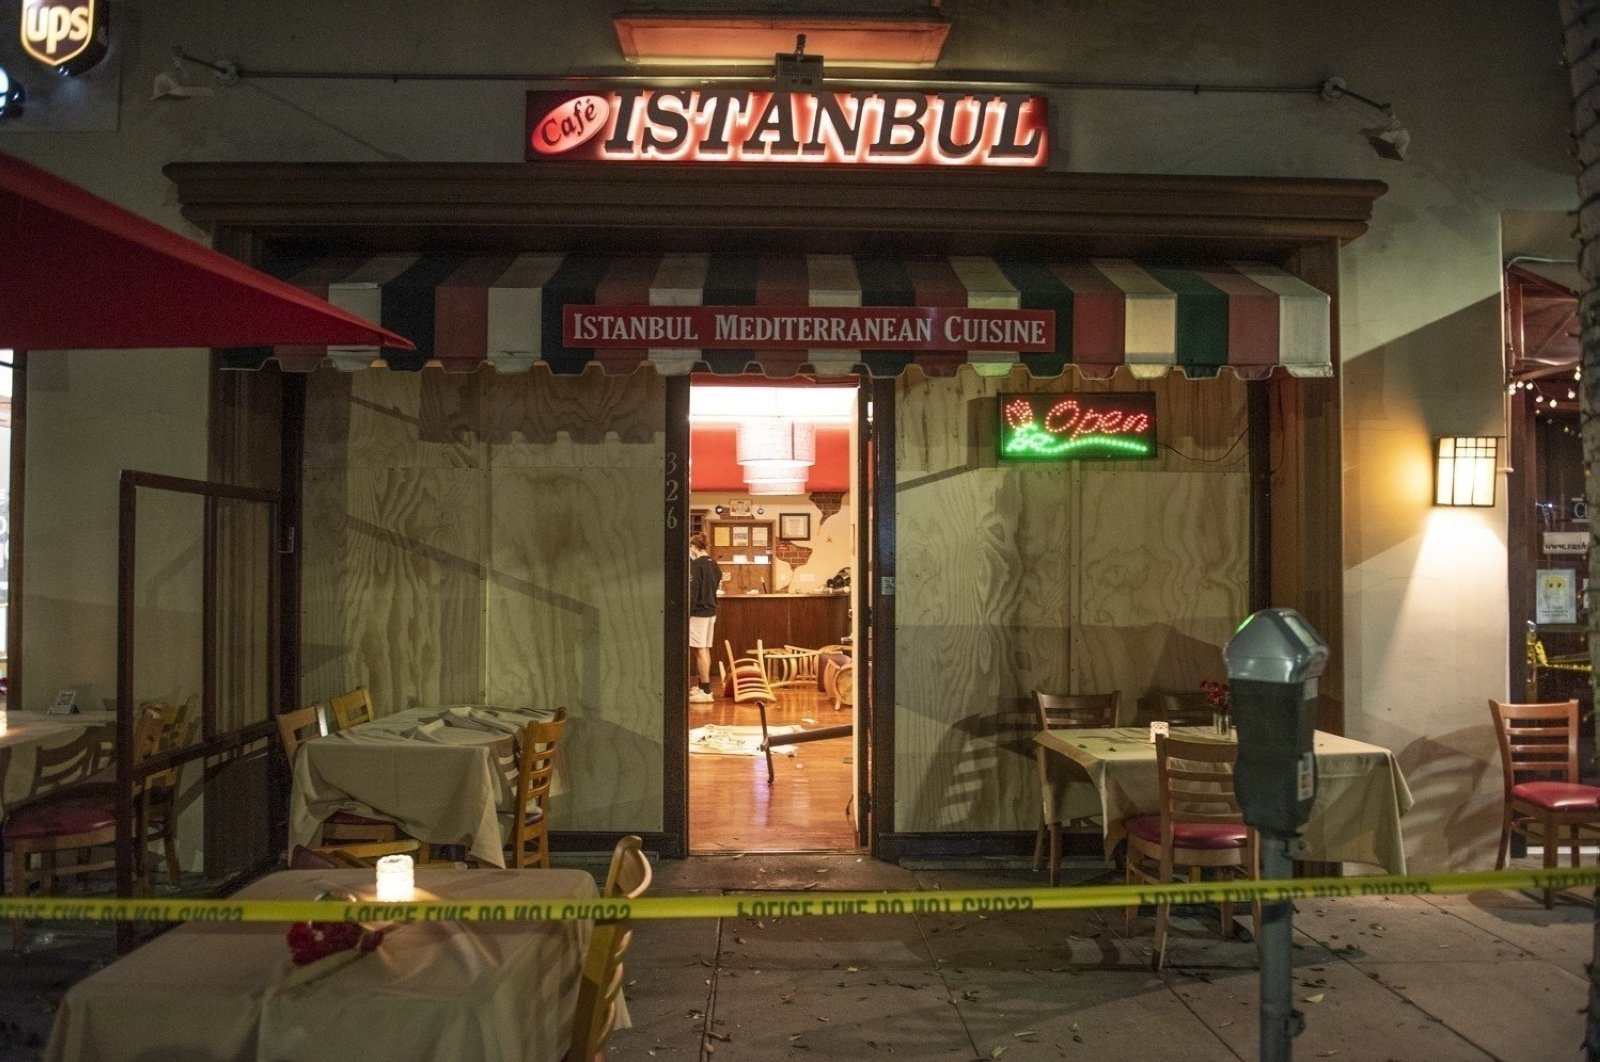 2 orang Armenia dihukum karena menyerang restoran Turki di AS